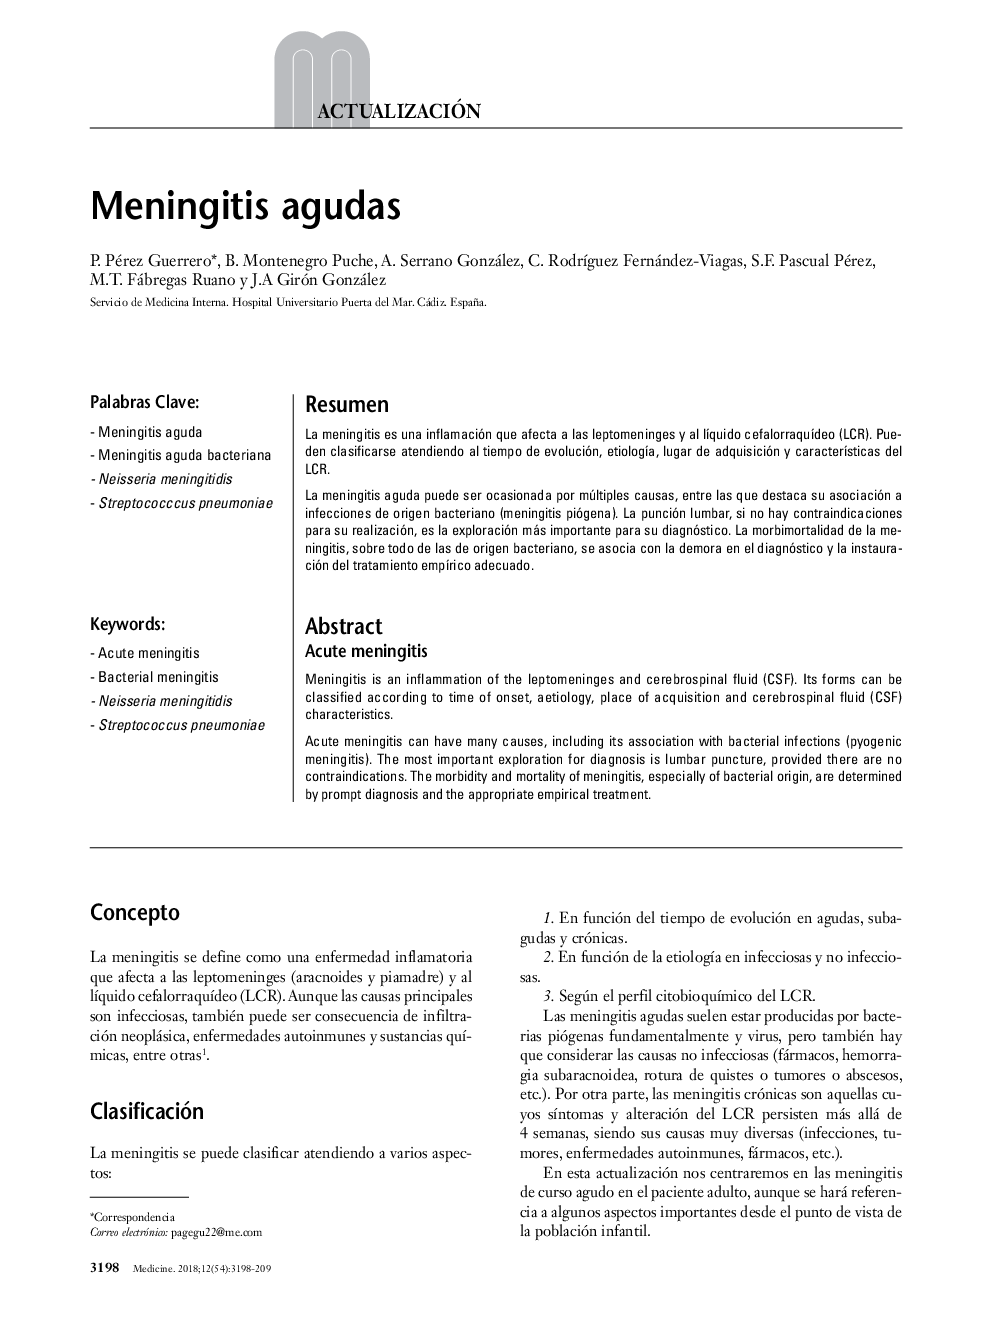 Meningitis agudas